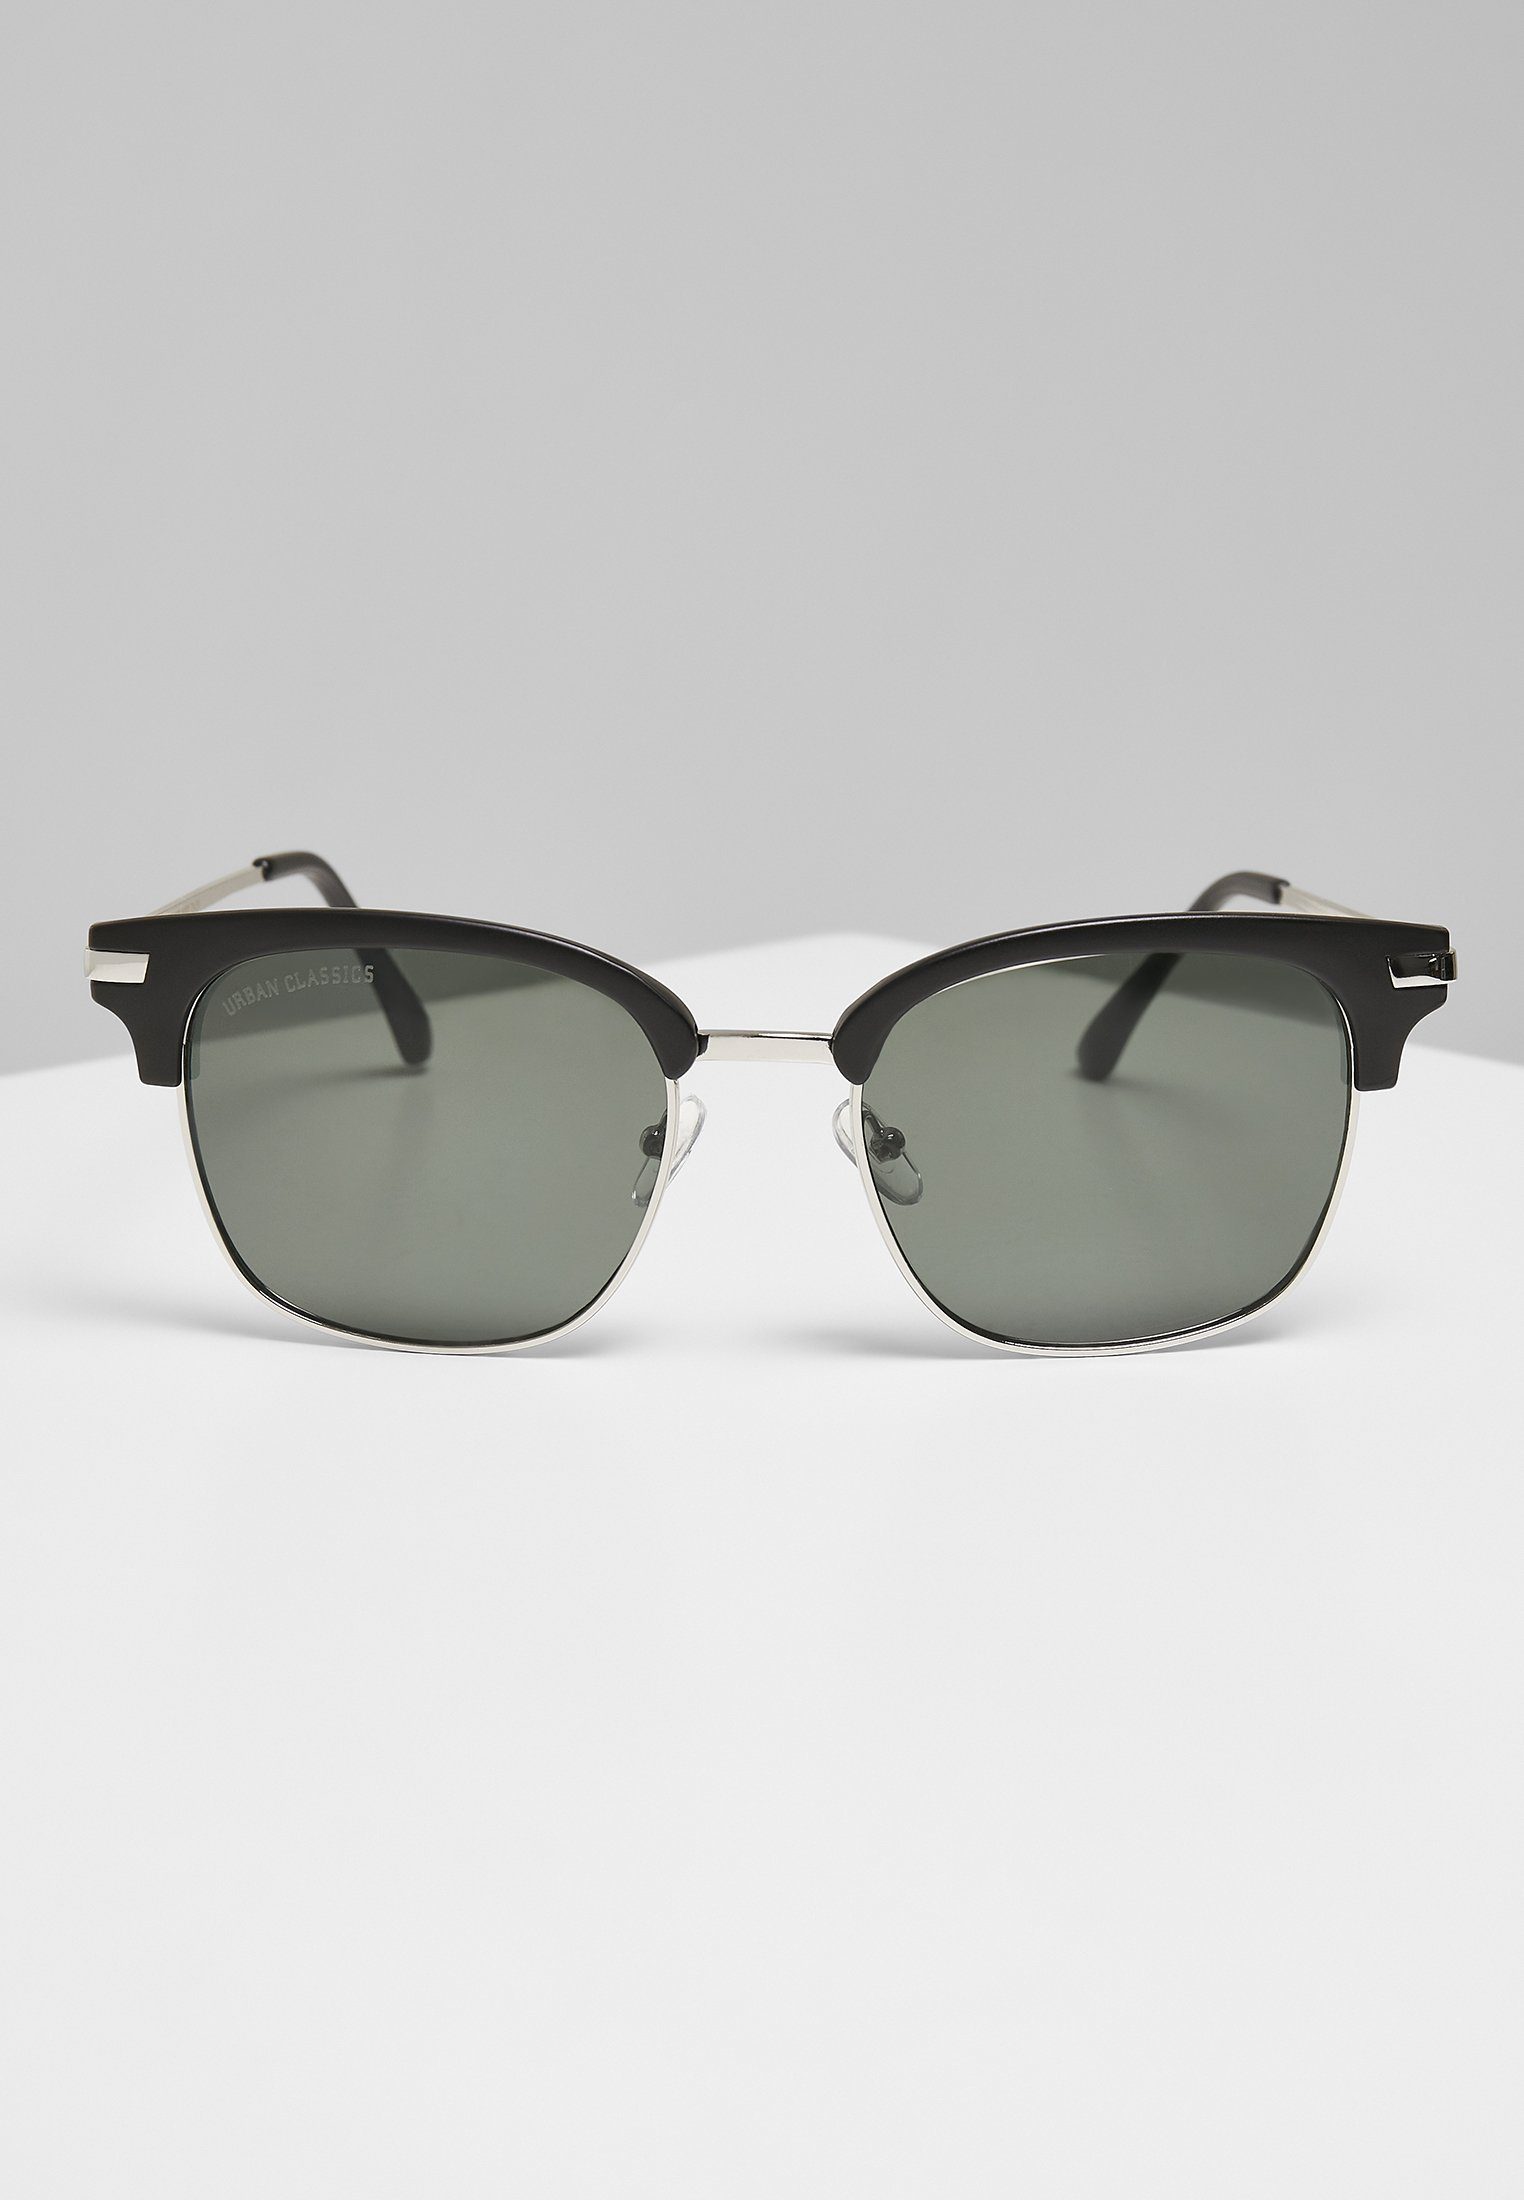 URBAN CLASSICS Sonnenbrille With Chain Sunglasses Crete Unisex